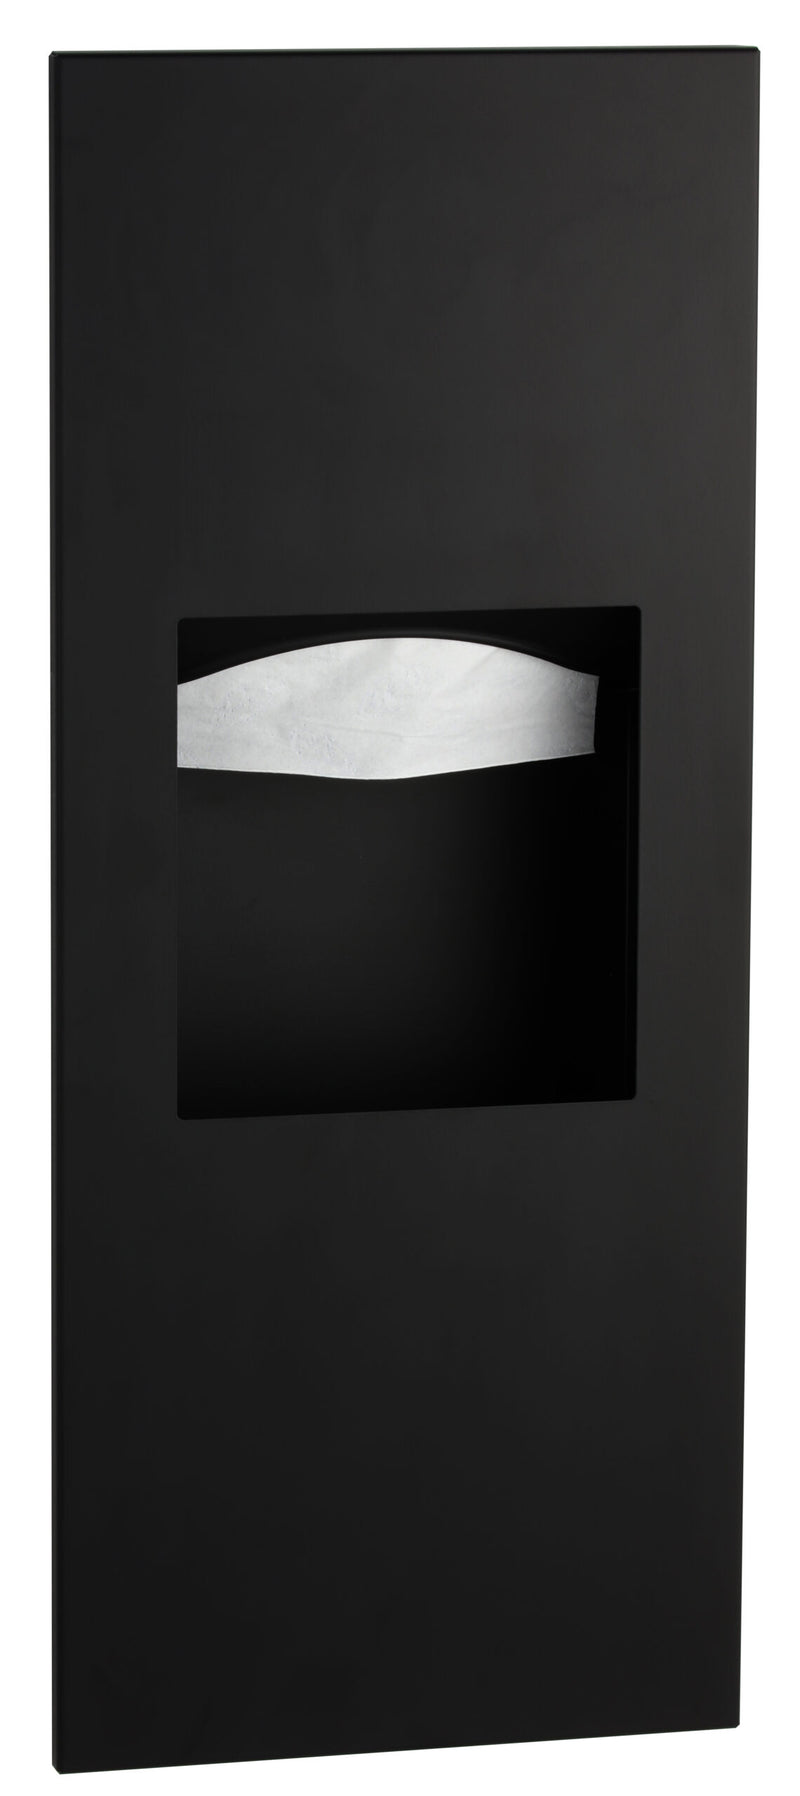 Bobrick - B-36903.MBLK - TrimLineSeries™ Recessed Paper Towel Dispenser/Waste Receptacle, Matte Black